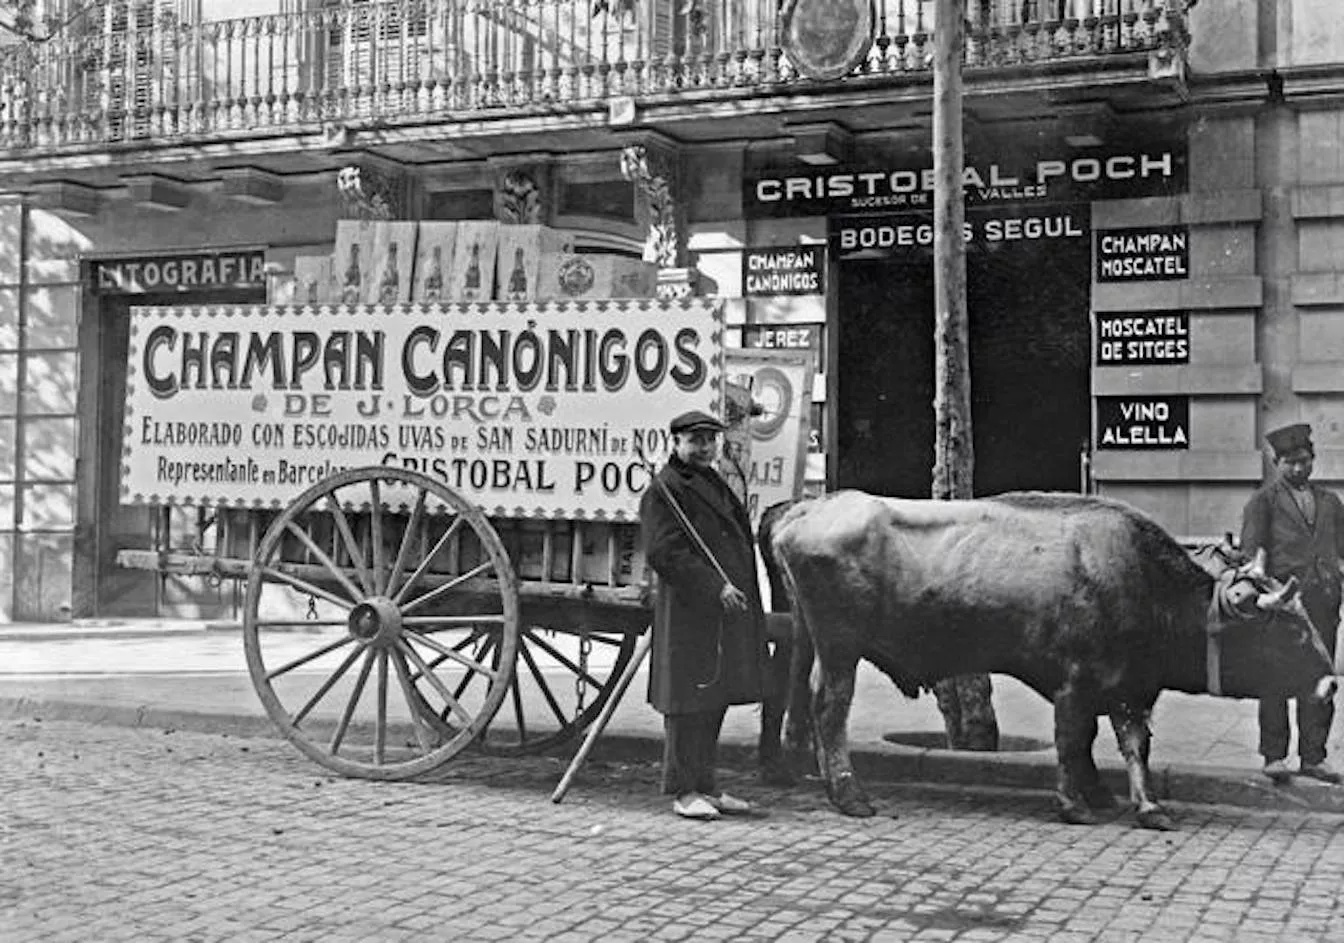 A finals del segle XIX i inicis del segle XX, els carrers es van omplir de publicitat, fins i tot els carros en portaven